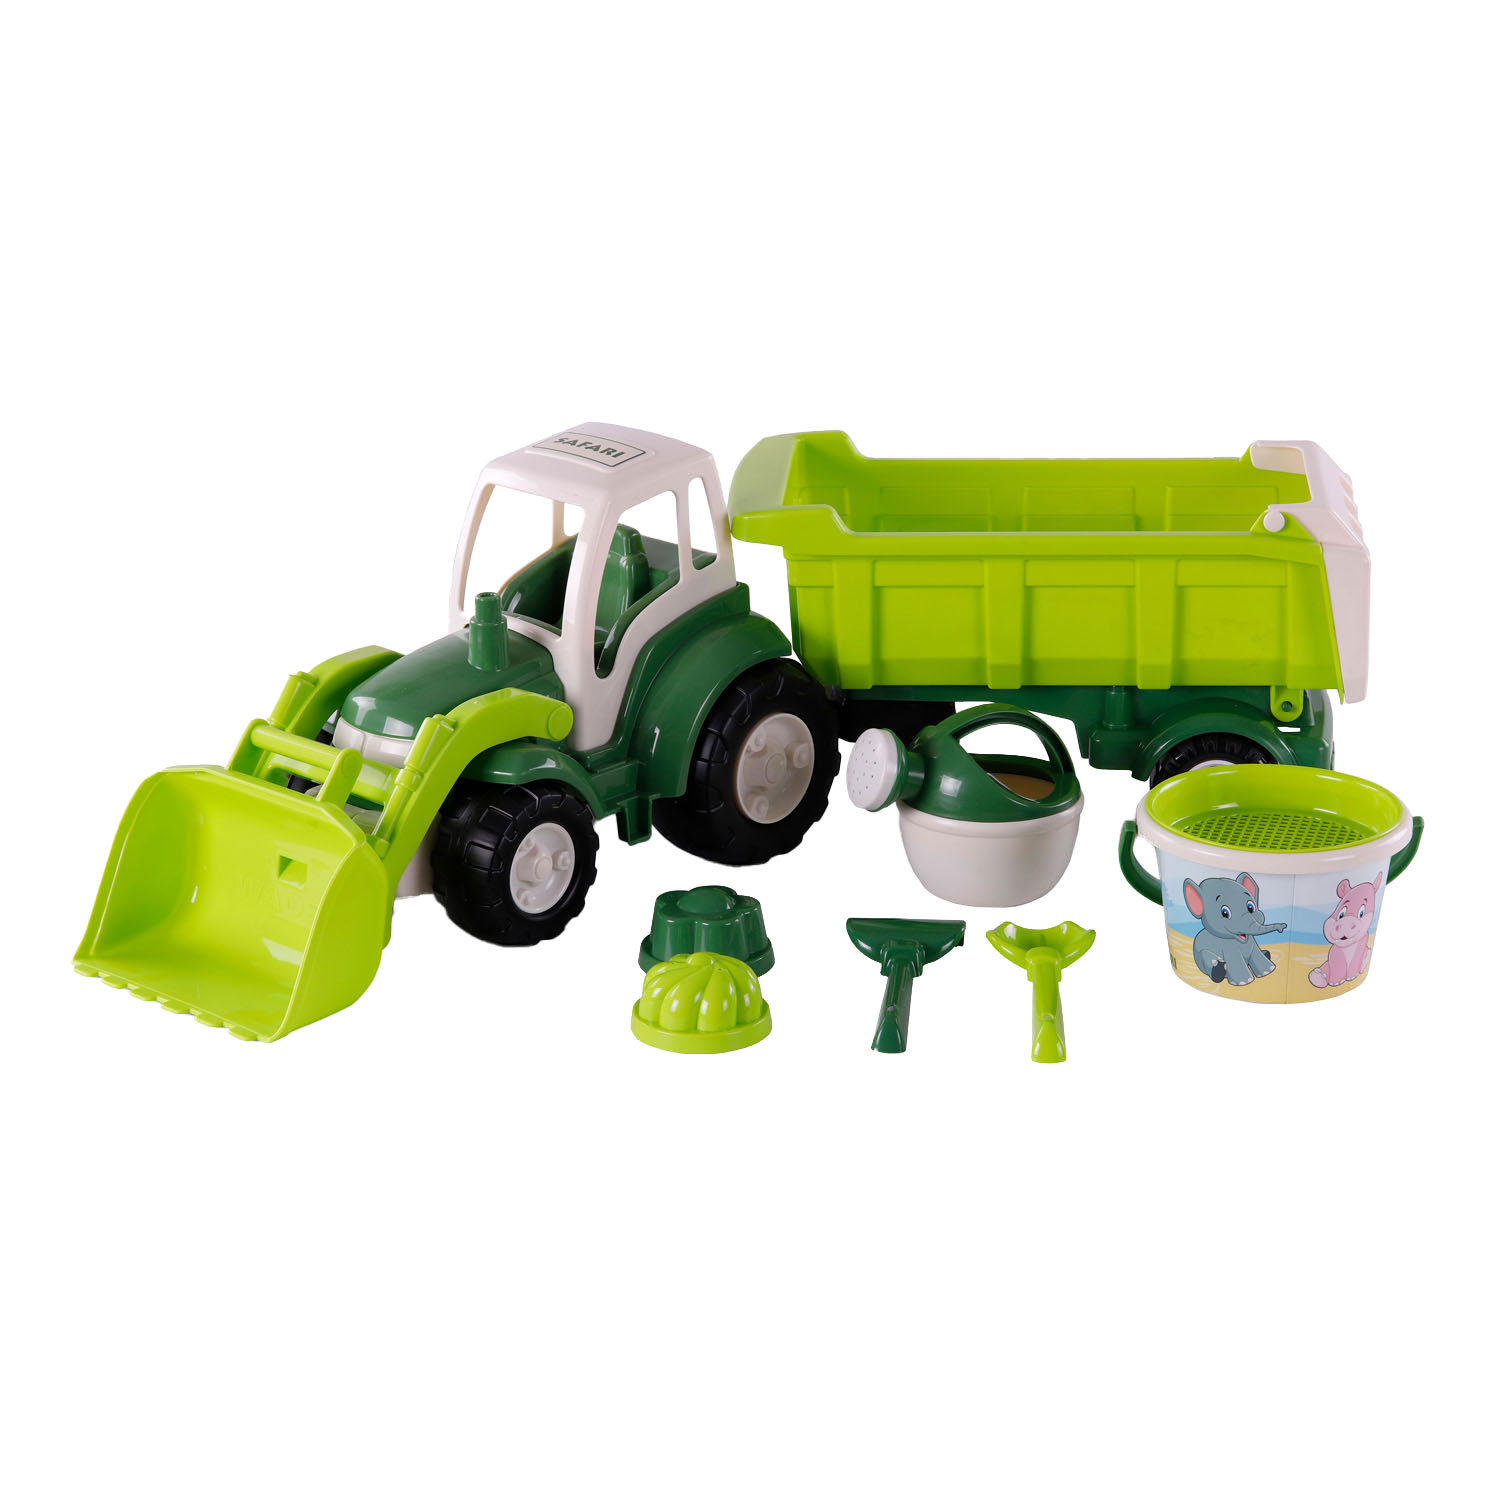 Tracteur Cavallino XL vert avec remorque benne et jeu de godets, 9 pcs.